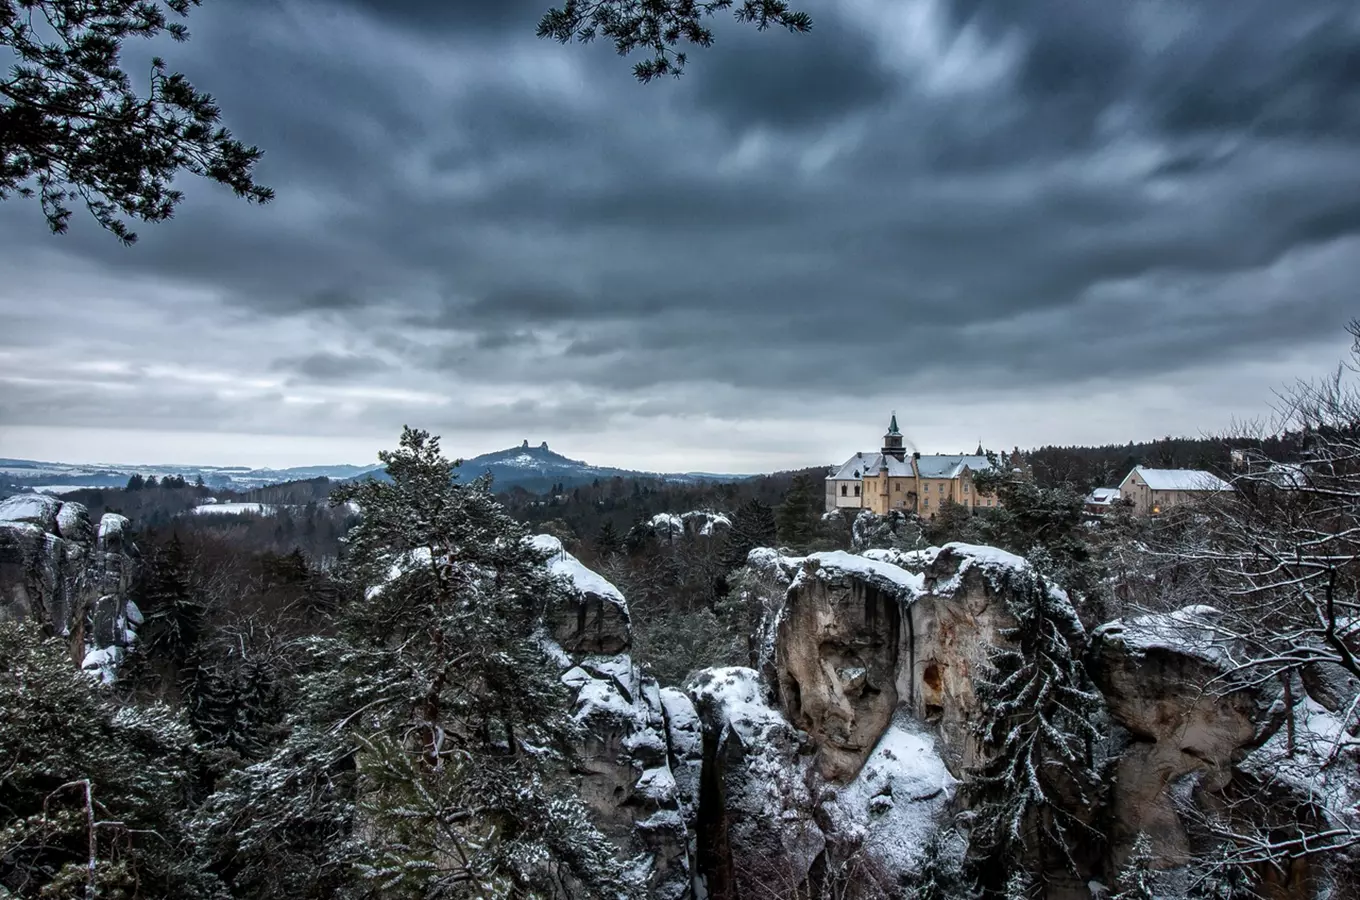 Český ráj nabízí atraktivní zážitky i v zimě